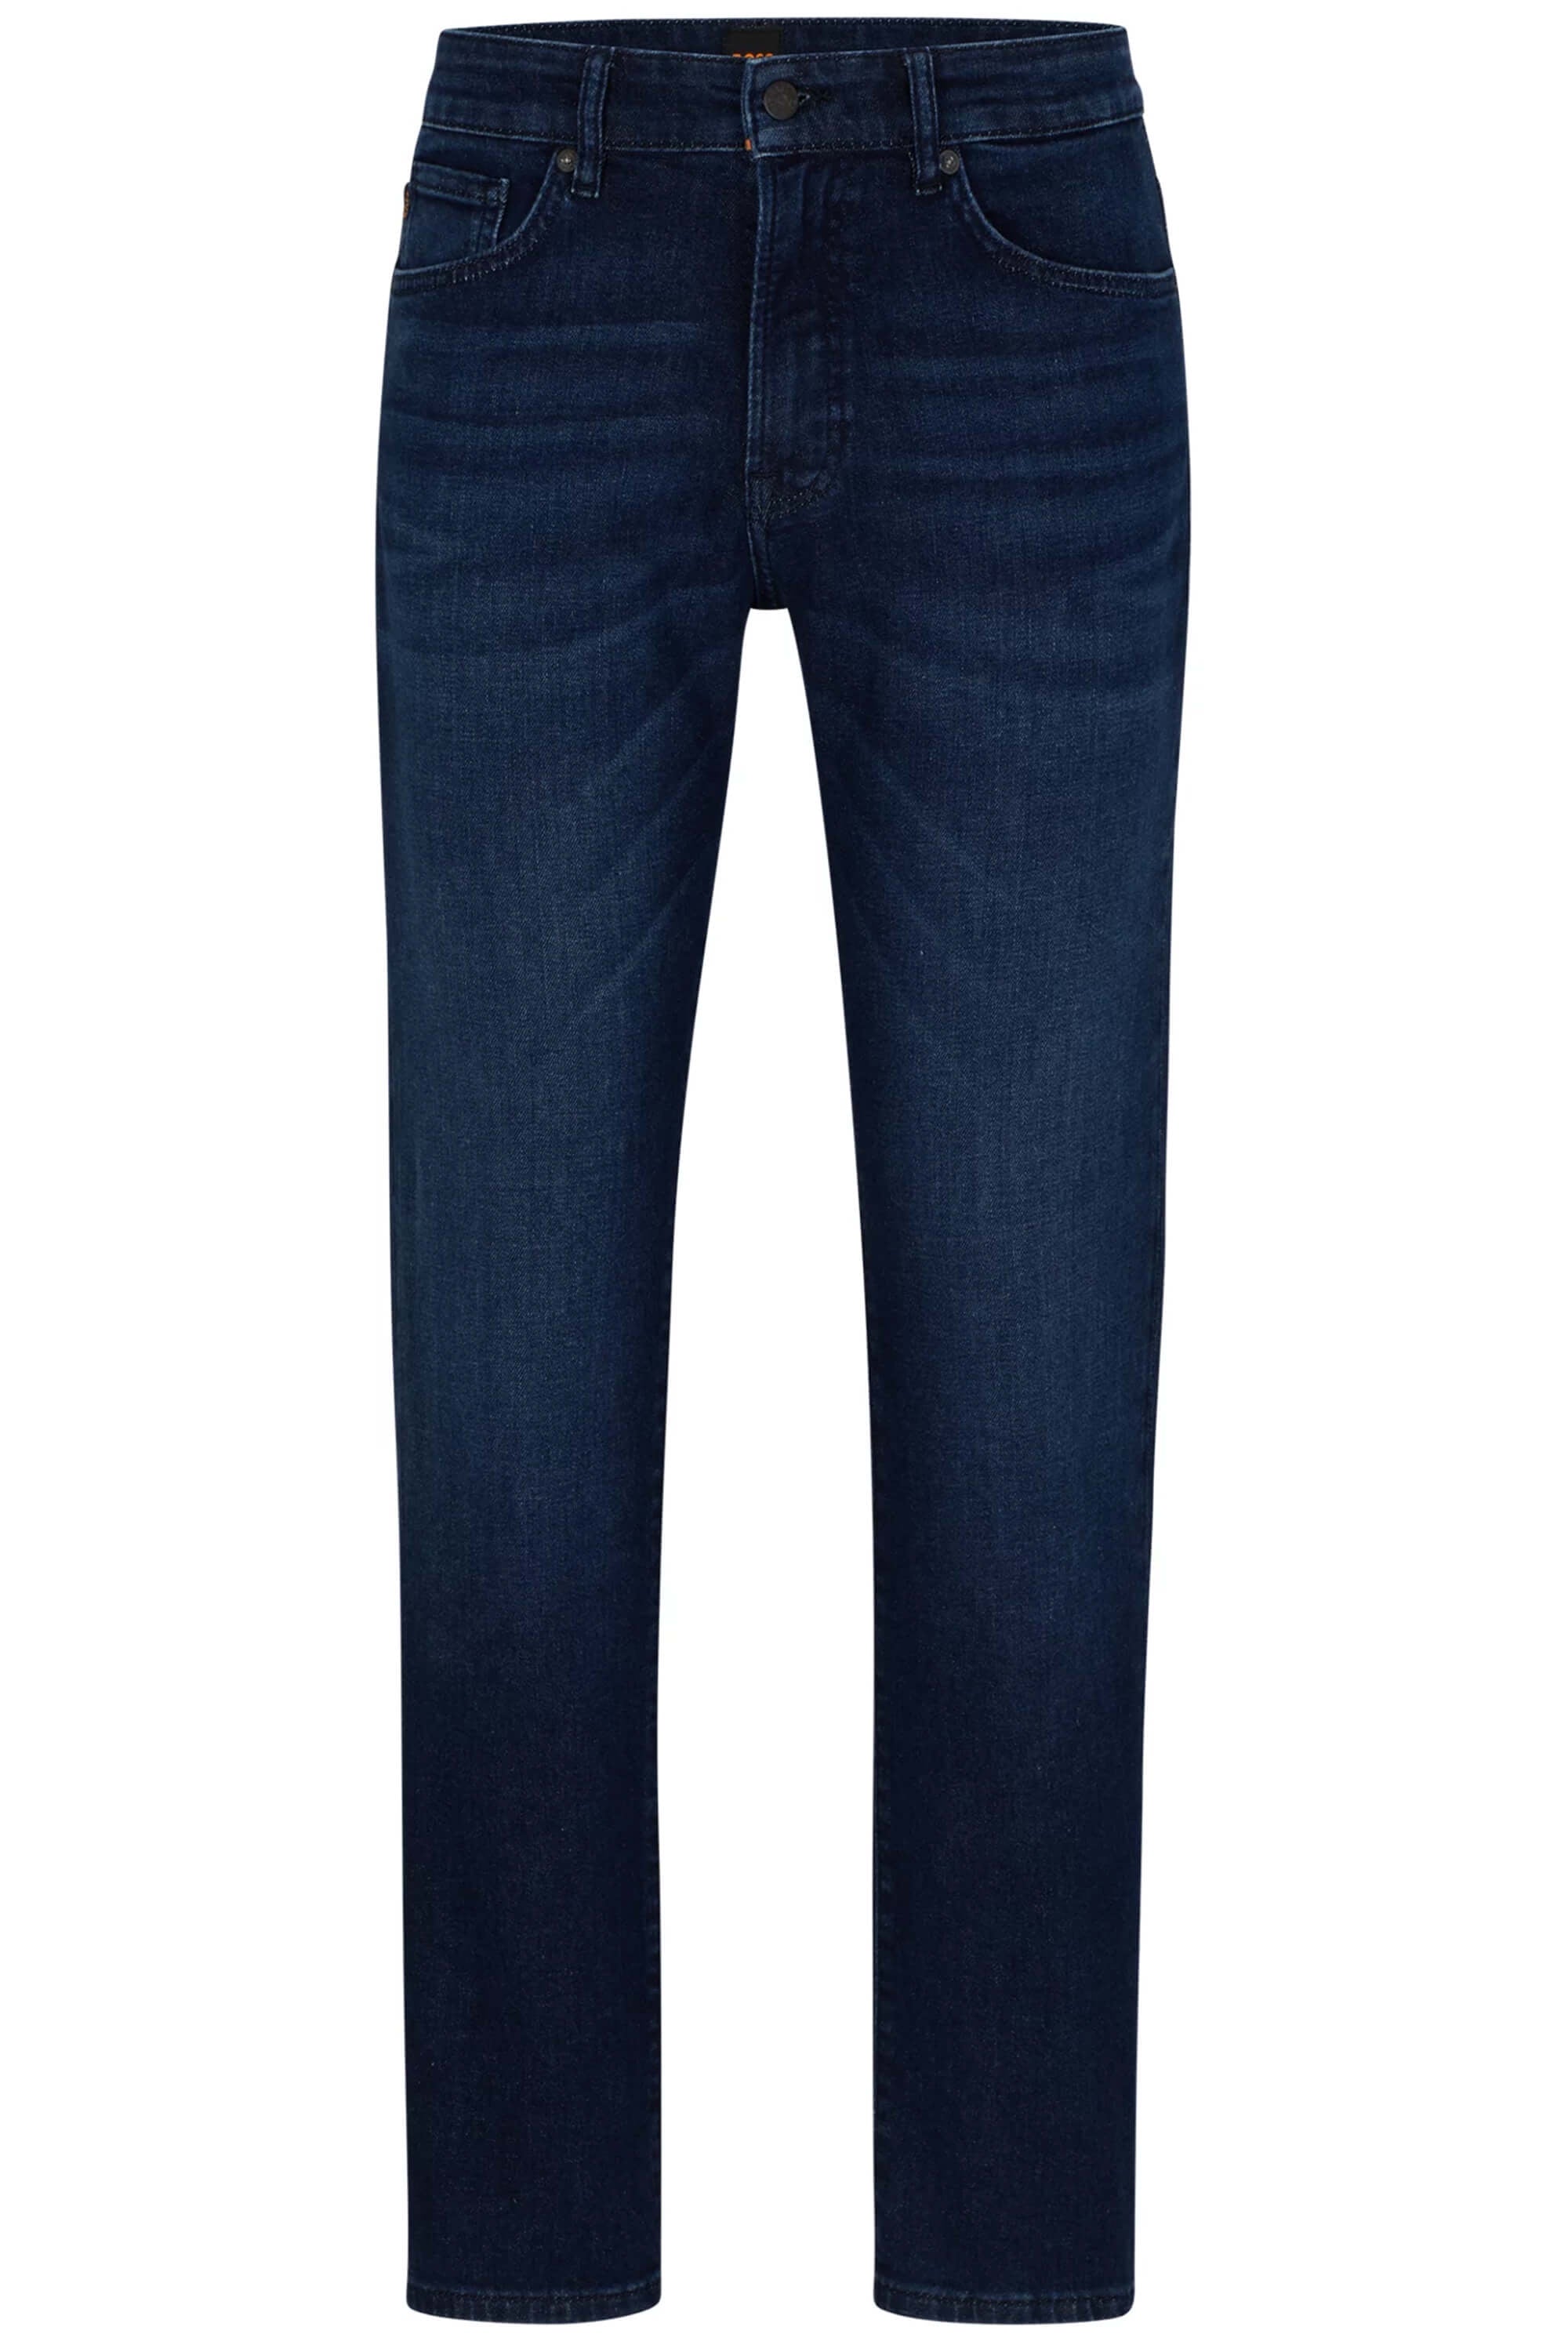 Hugo Boss Re.Maine Horizon Jeans